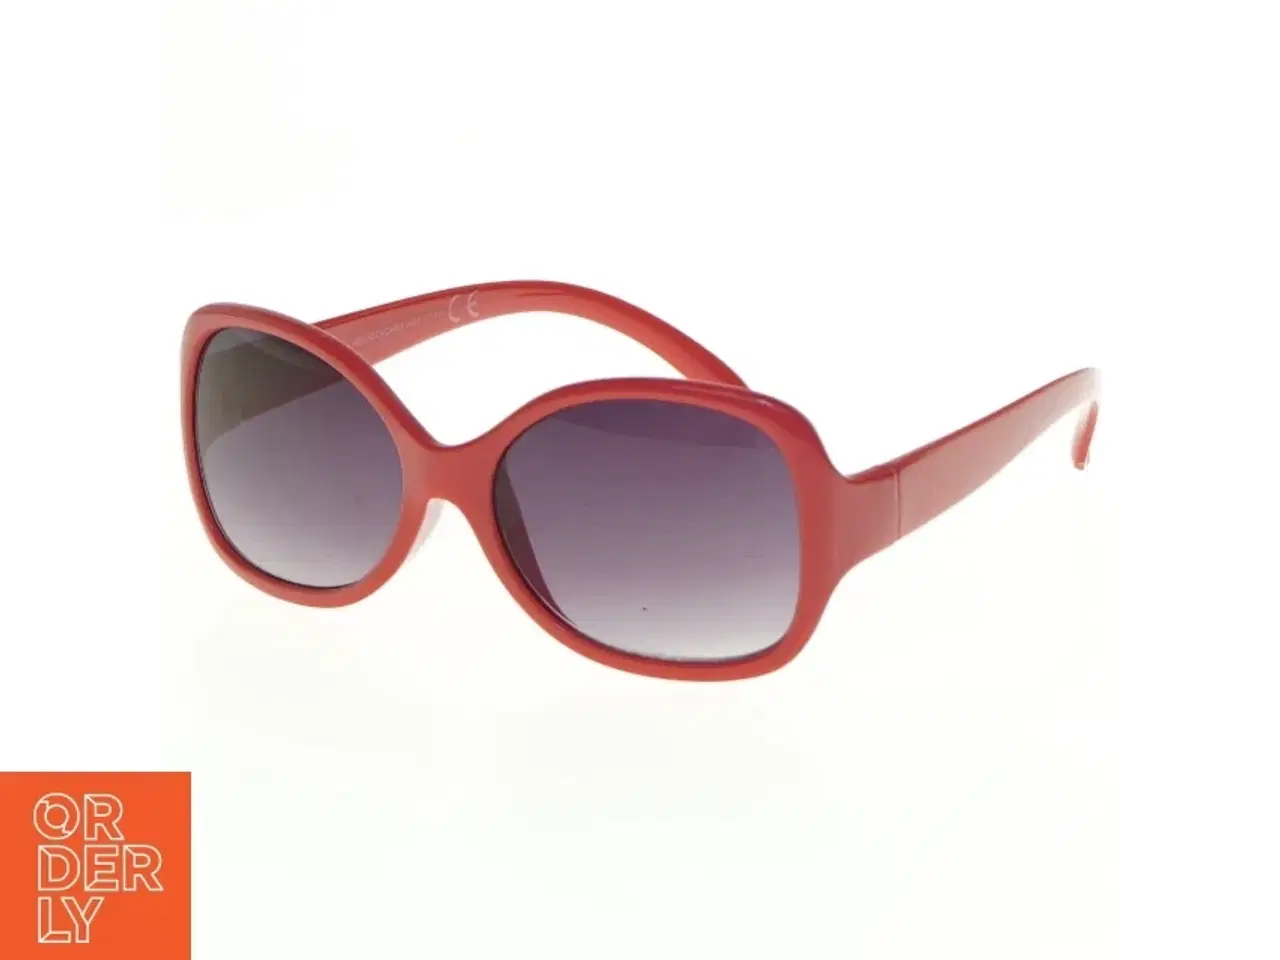 Billede 1 - Røde solbriller (str. 12 x 13 cm)